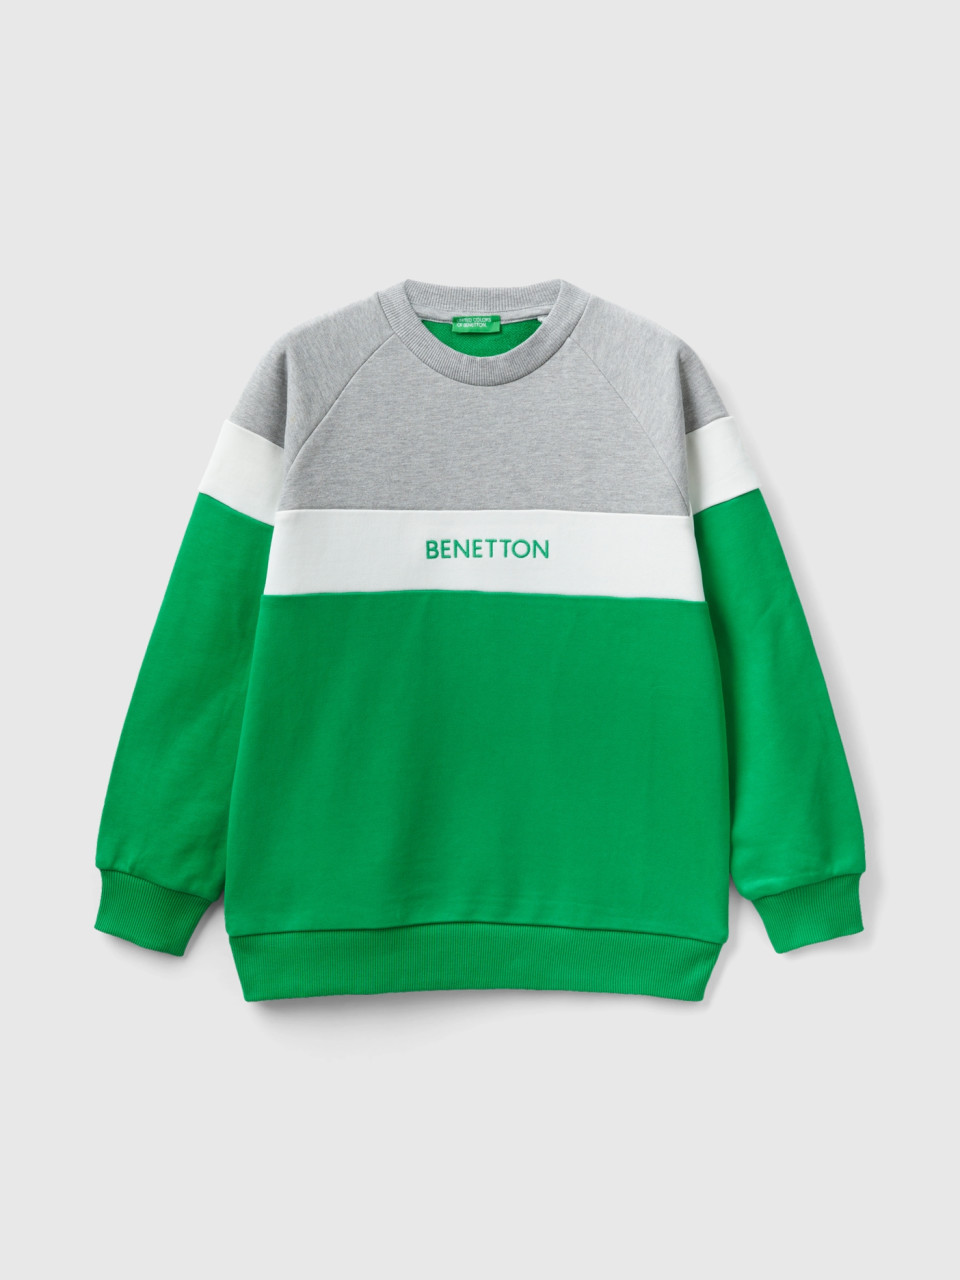 Benetton, Sweatshirt In Grau Und Grün Mit Logostickerei, Grün, male